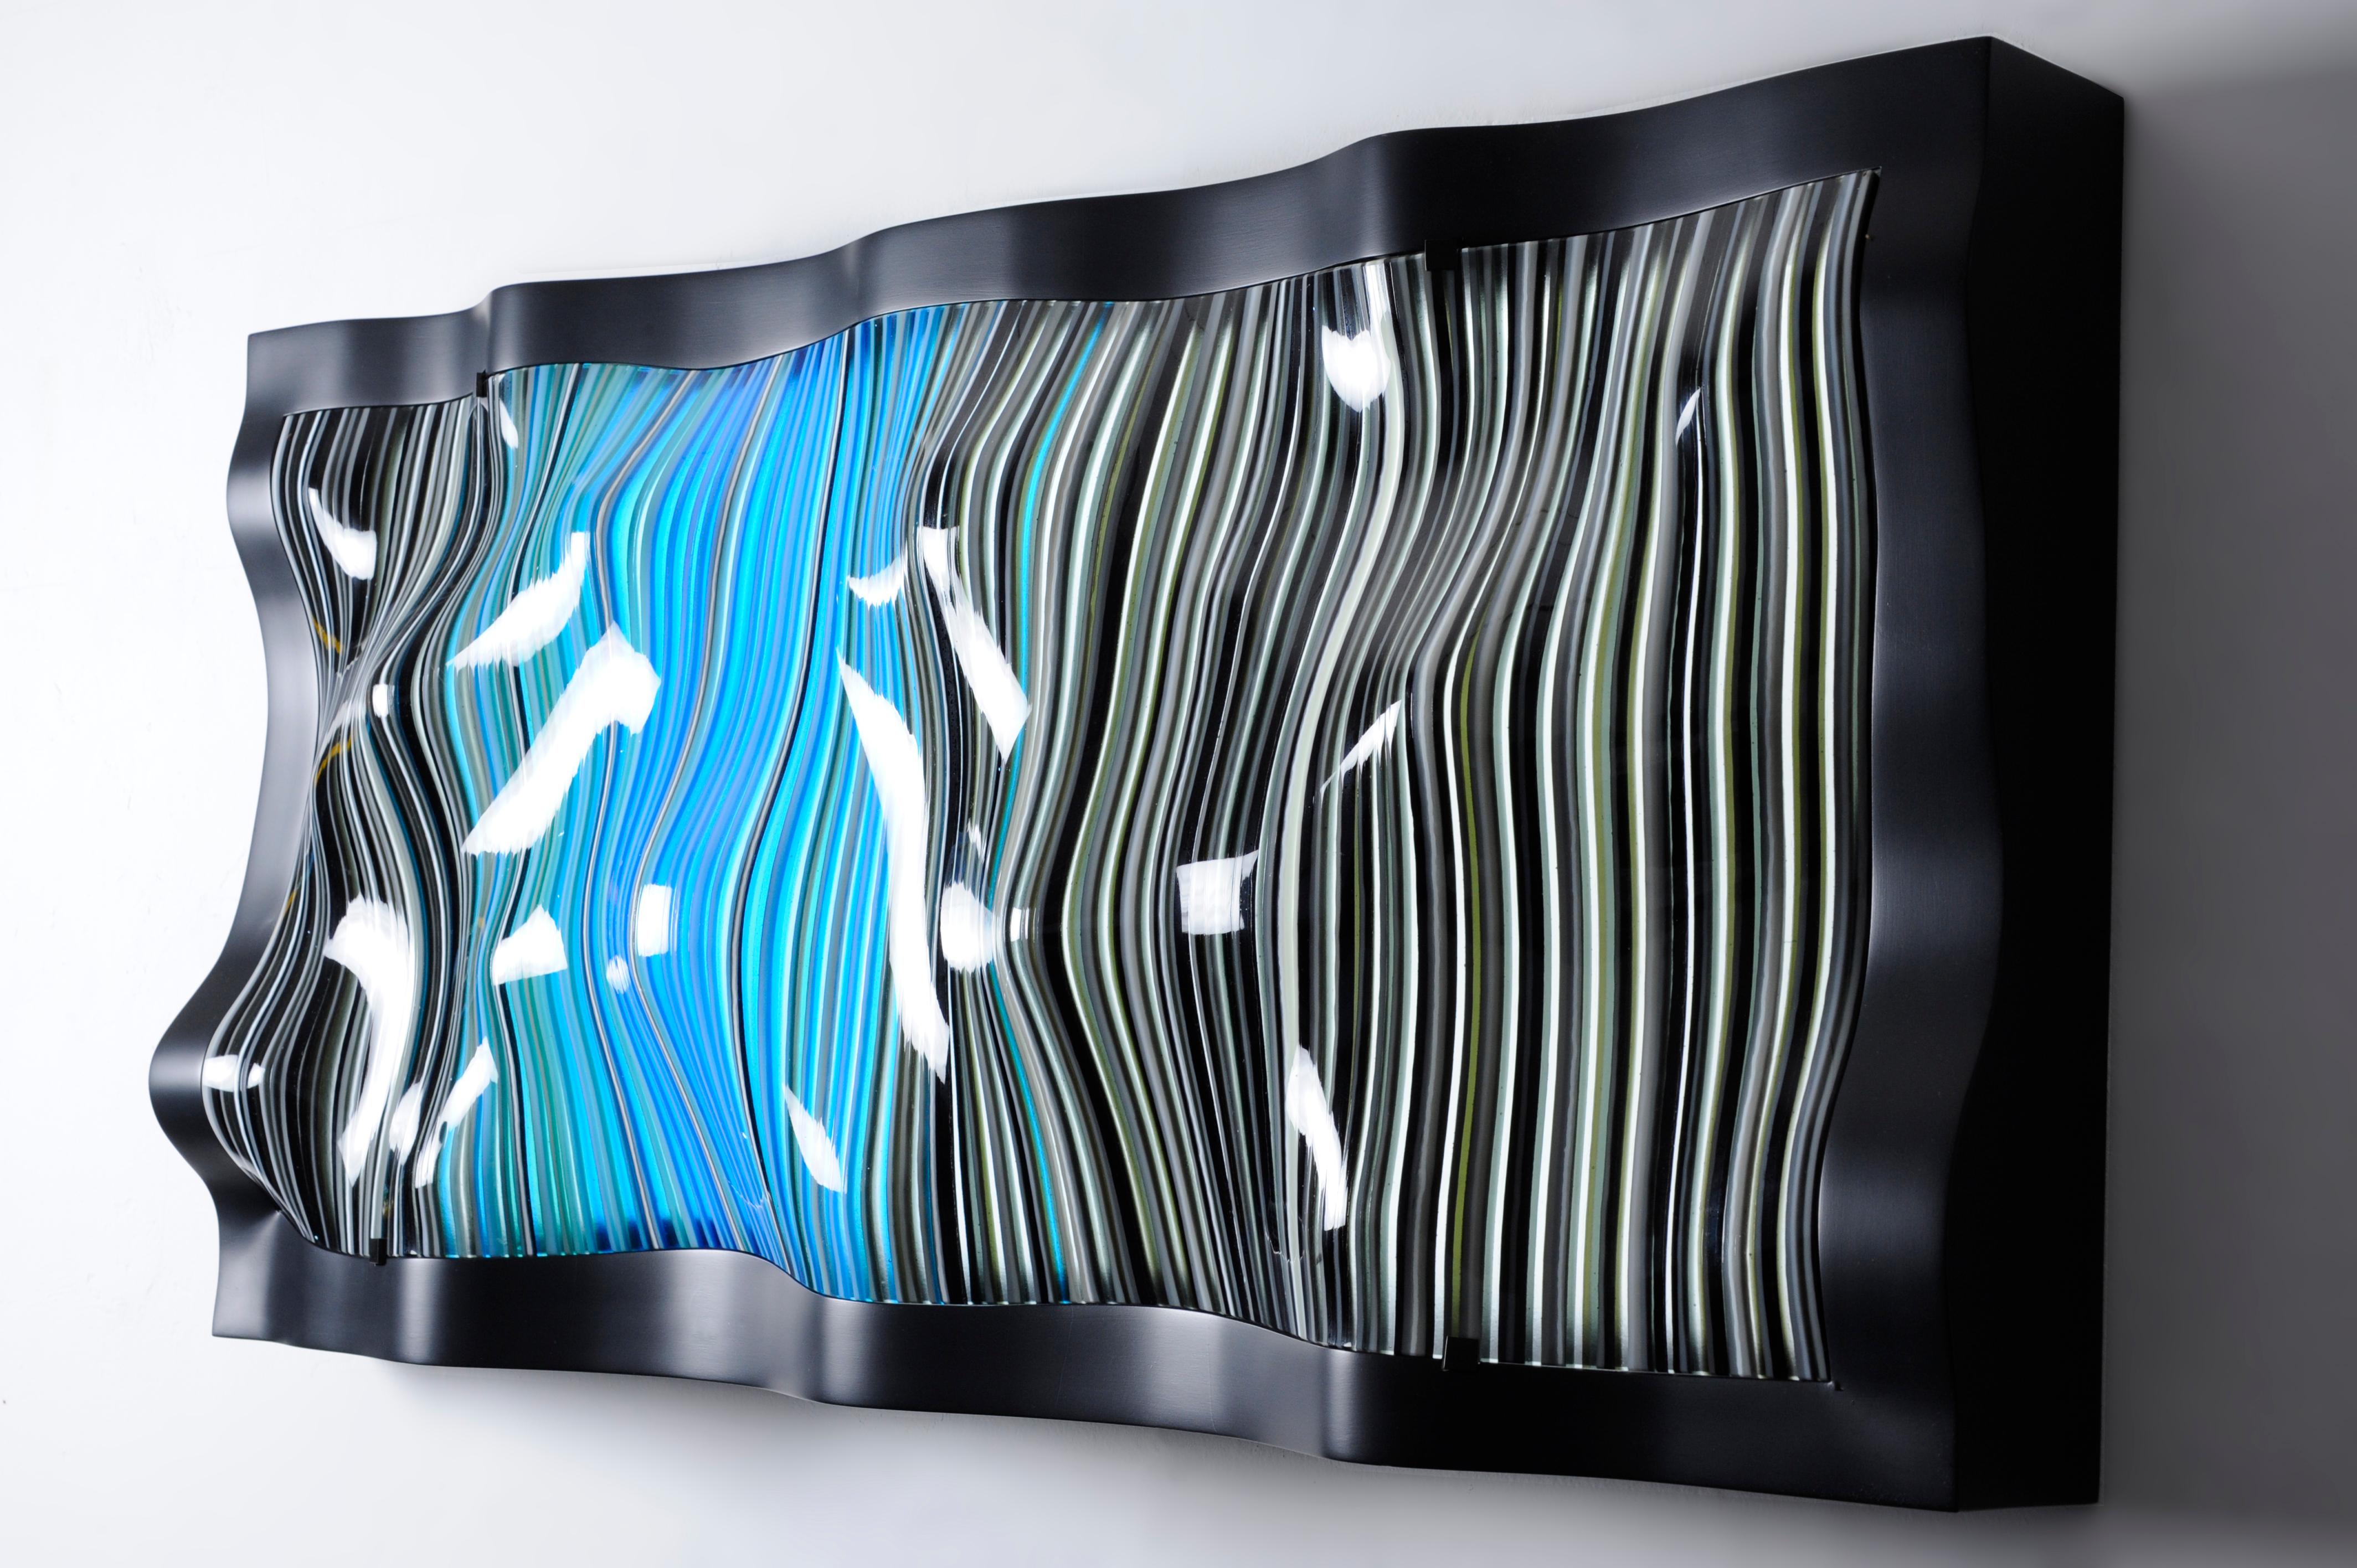 Un objet en verre fusionné et thermoformé conçu par Orfeo Quagliata. 
100% fait à la main avec des techniques exclusives et des matériaux de la plus haute qualité. De notre collection 